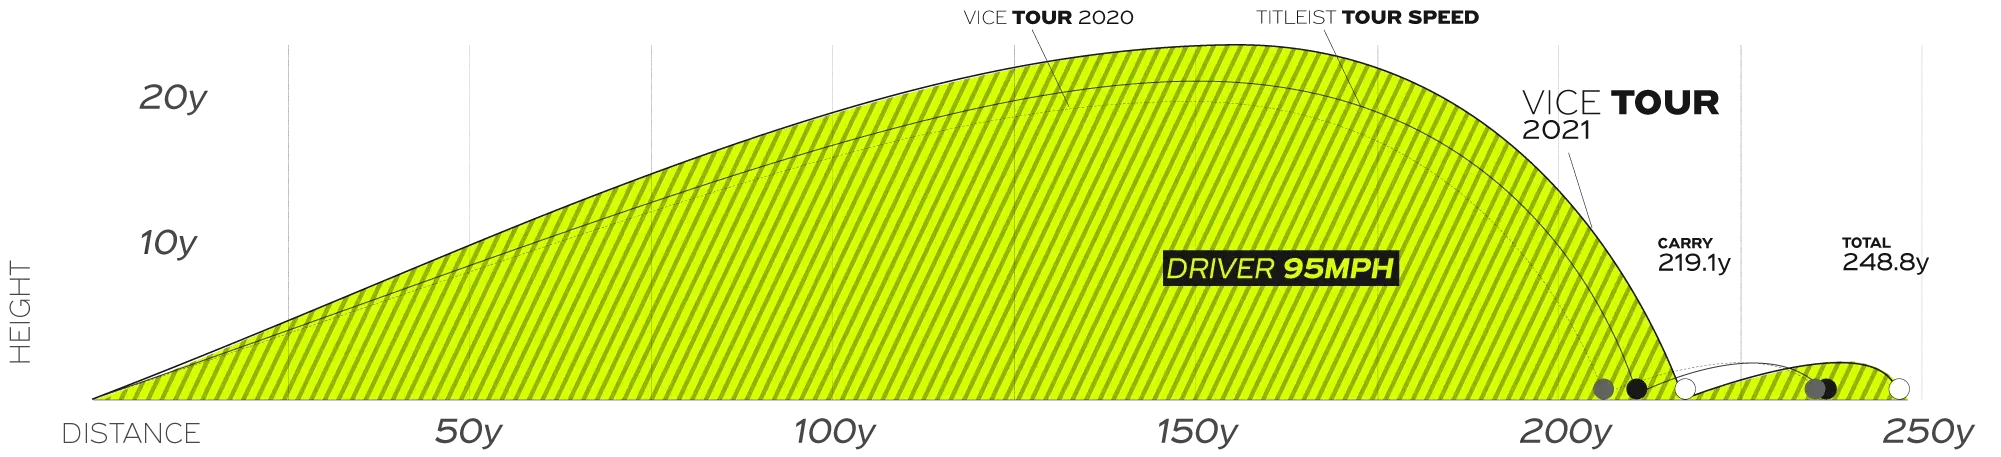 Driver graph